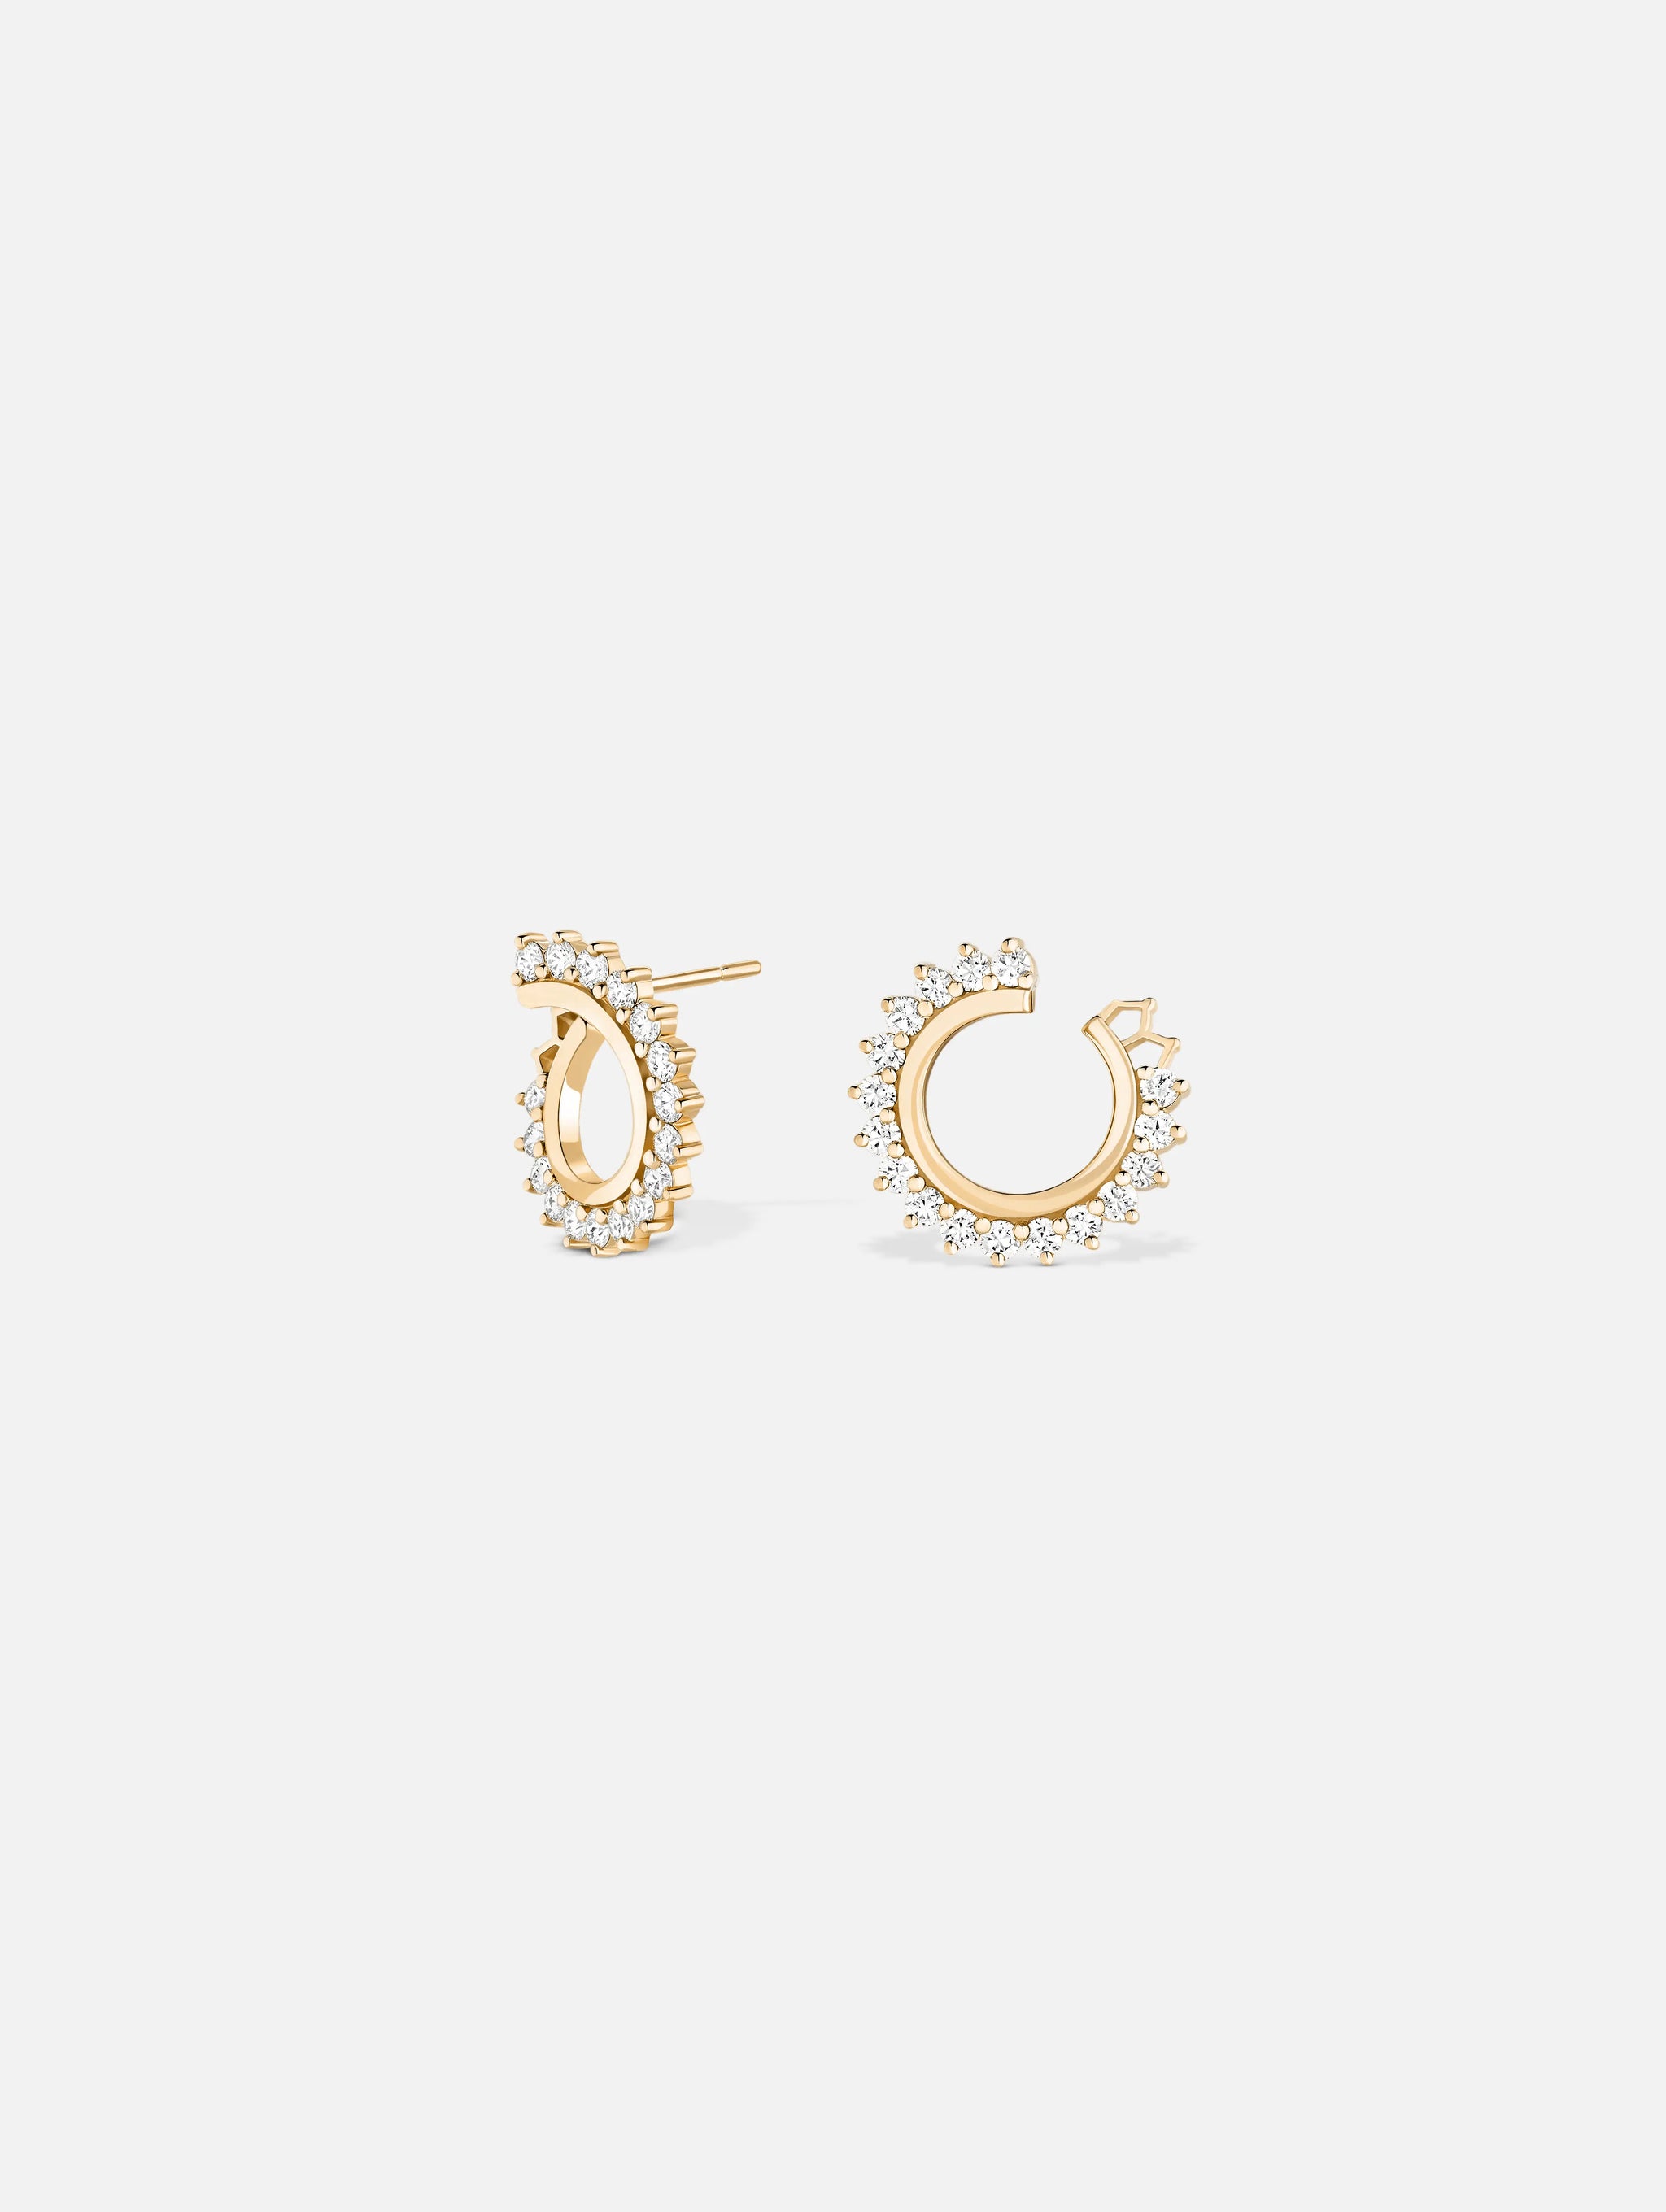 Boucles d'oreilles Vendôme Diamant en Or Jaune - 1 - Nouvel Heritage